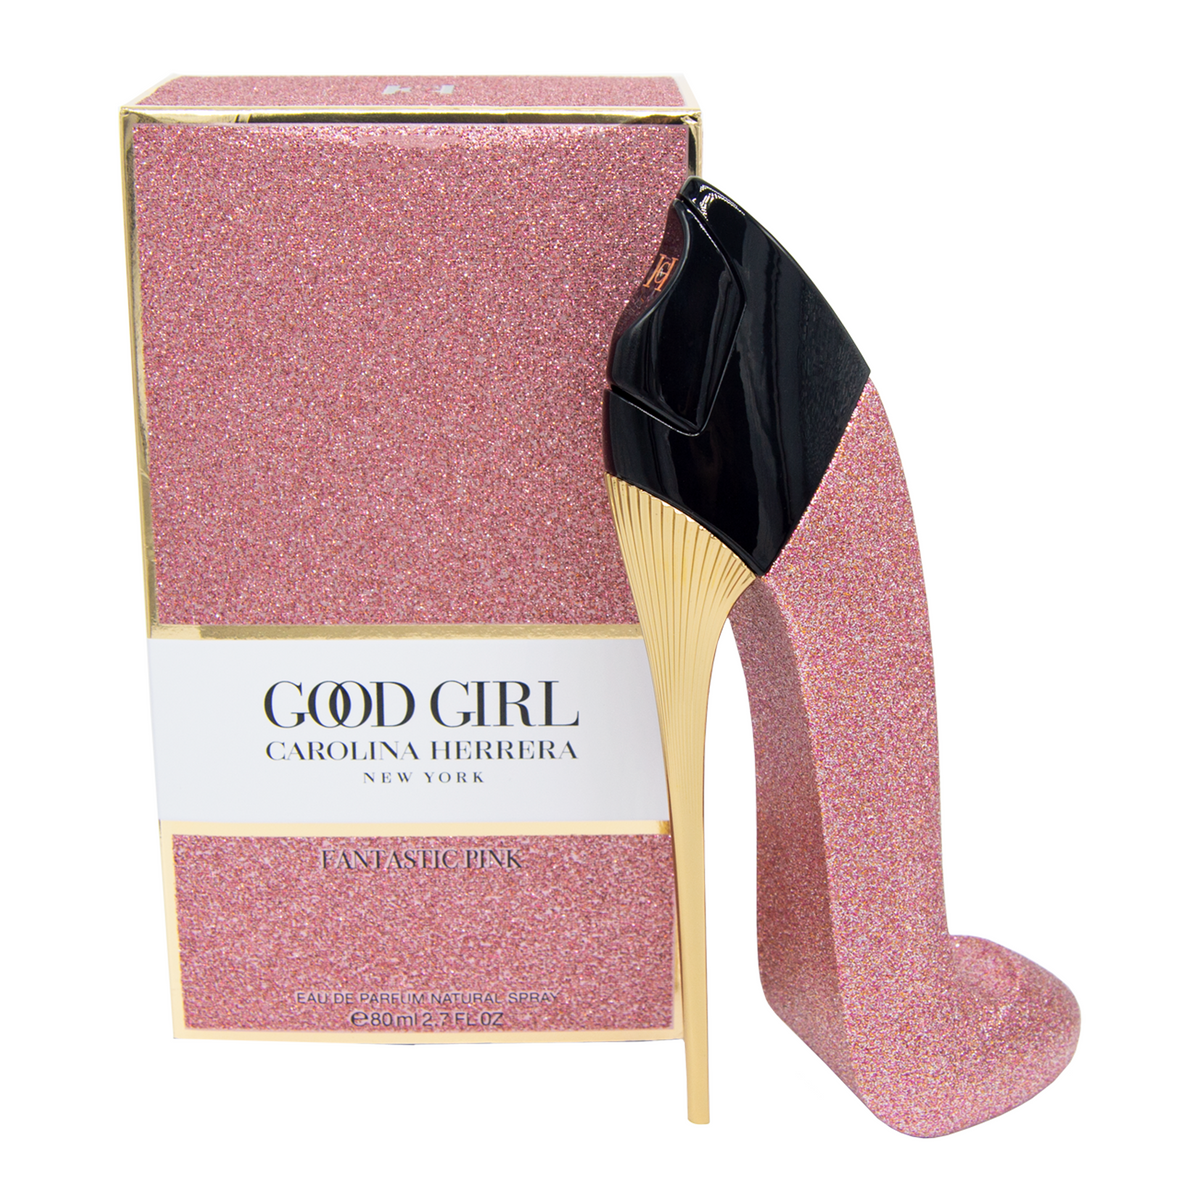 Good Girl Fantastic Pink Carolina Herrera Eau de Parfum - GiraOfertas